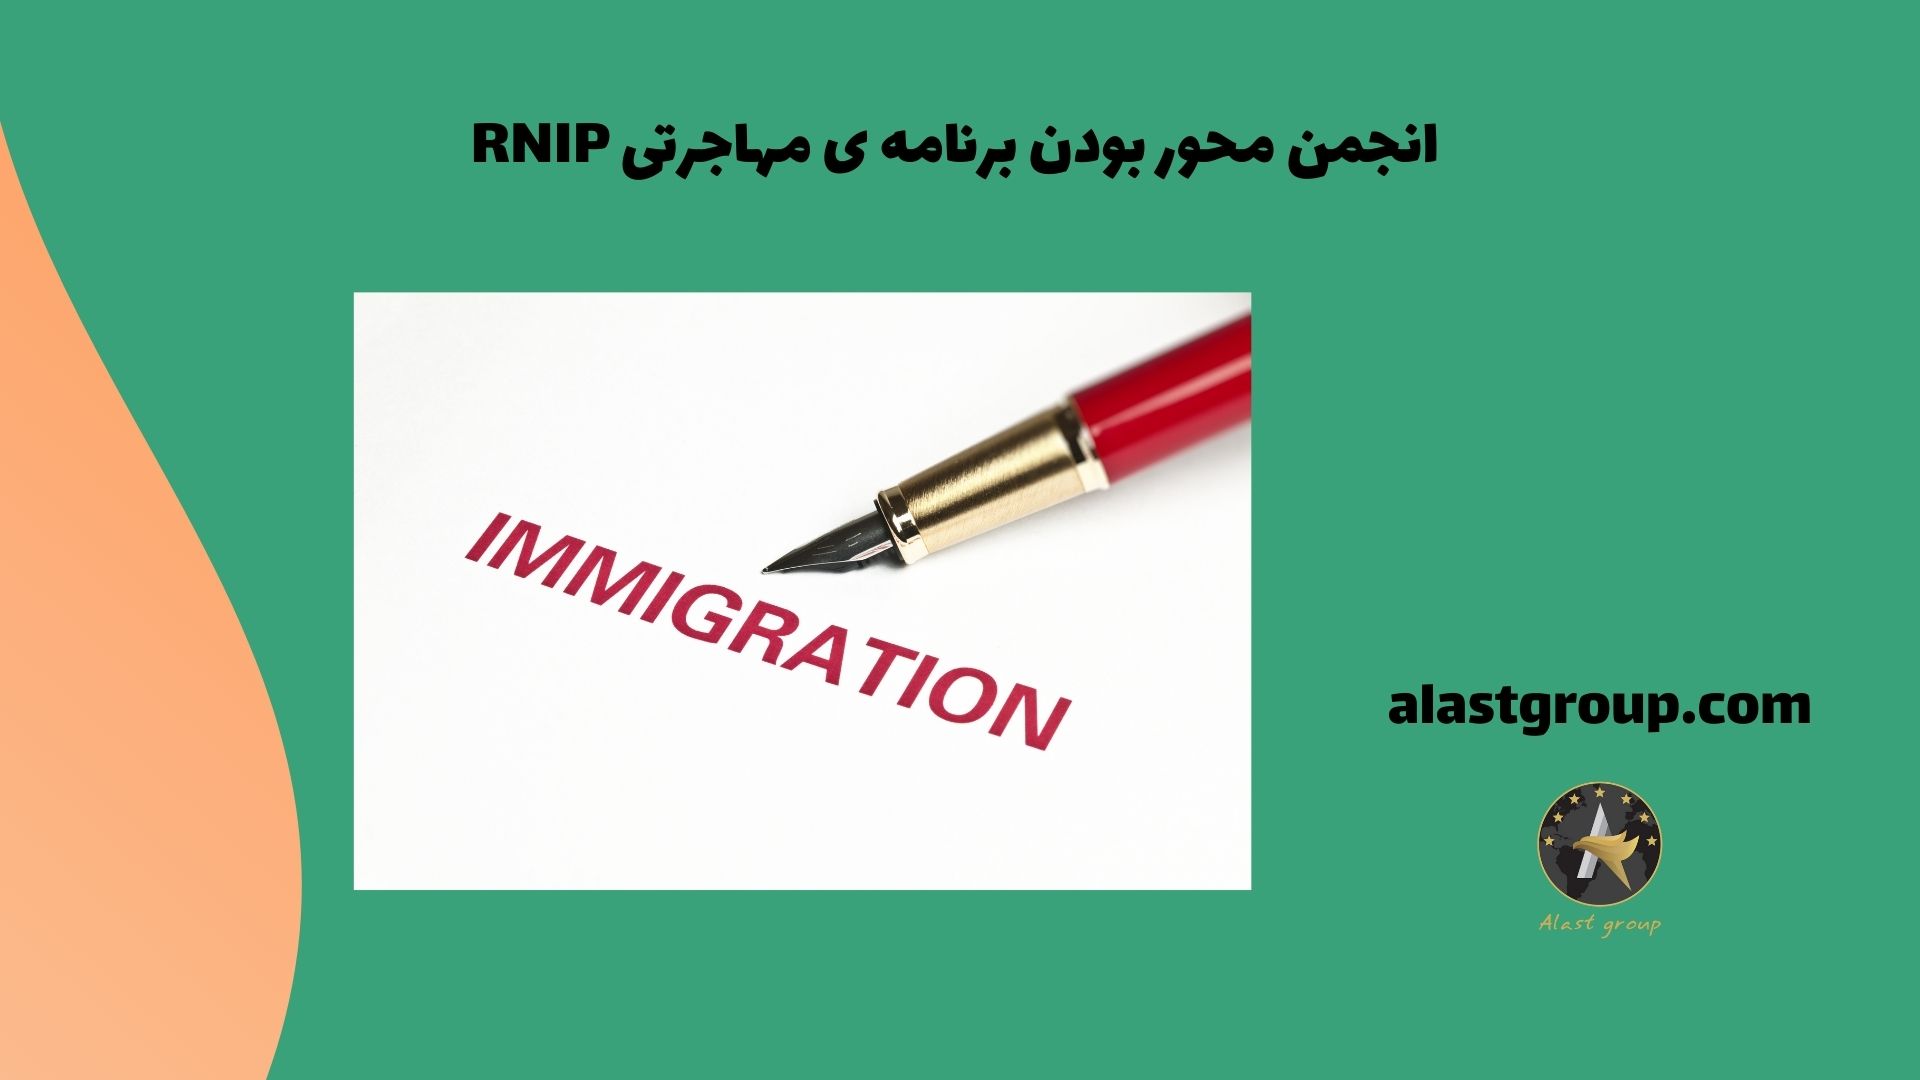 انجمن محور بودن برنامه ی مهاجرتی RNIP